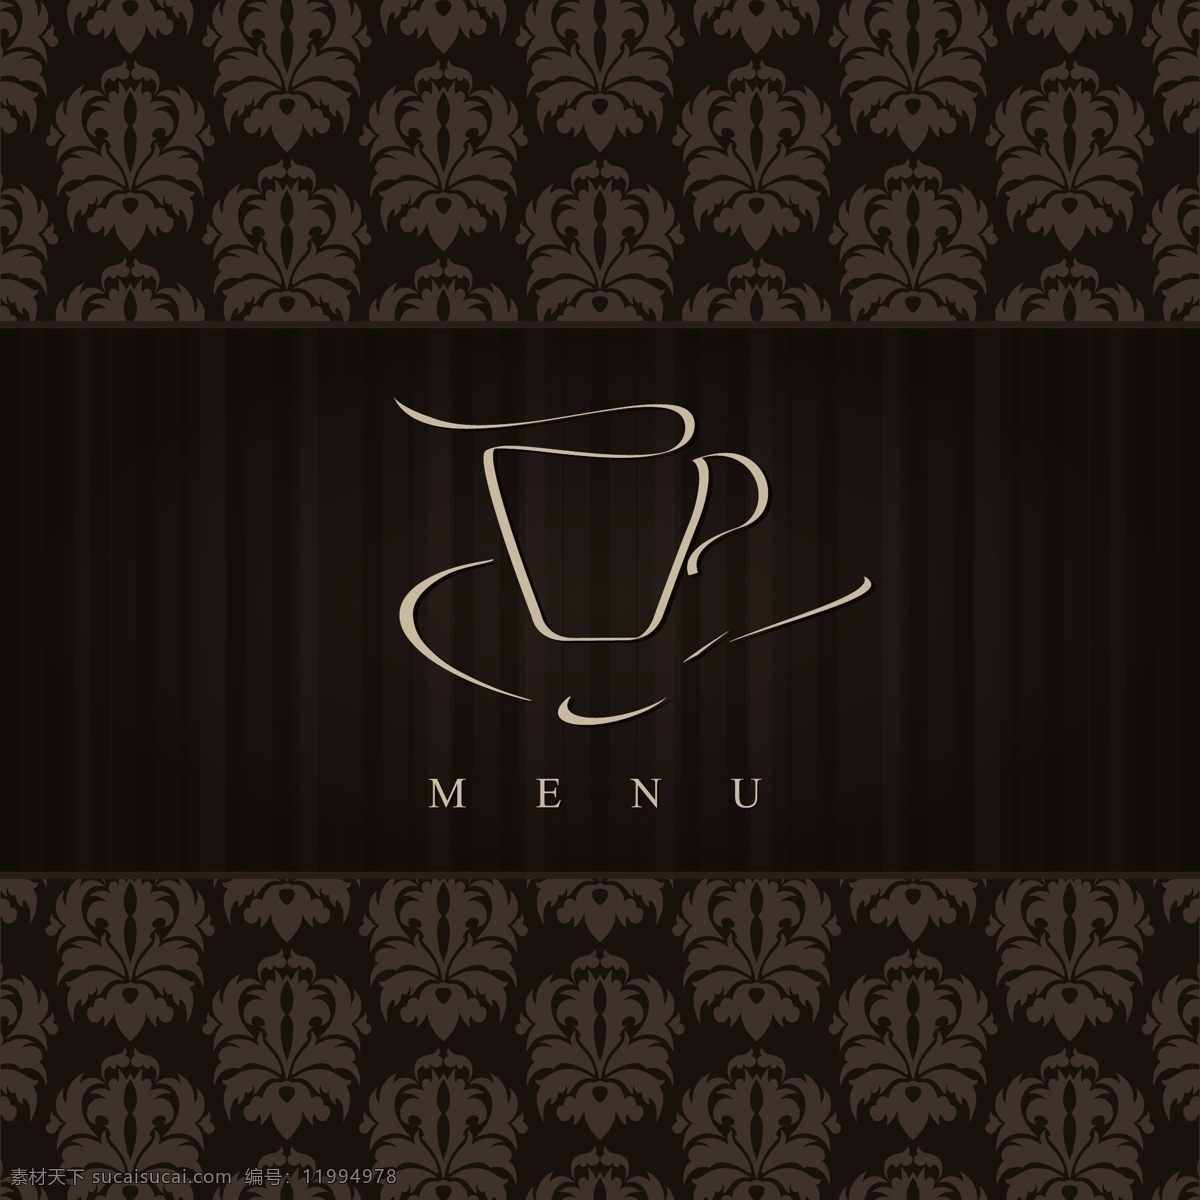 咖啡厅 菜单 封面设计 美食 餐厅 餐厅形象设计 餐厅菜单 简约时尚 咖啡 复古花纹 菜单菜谱 矢量素材 黑色